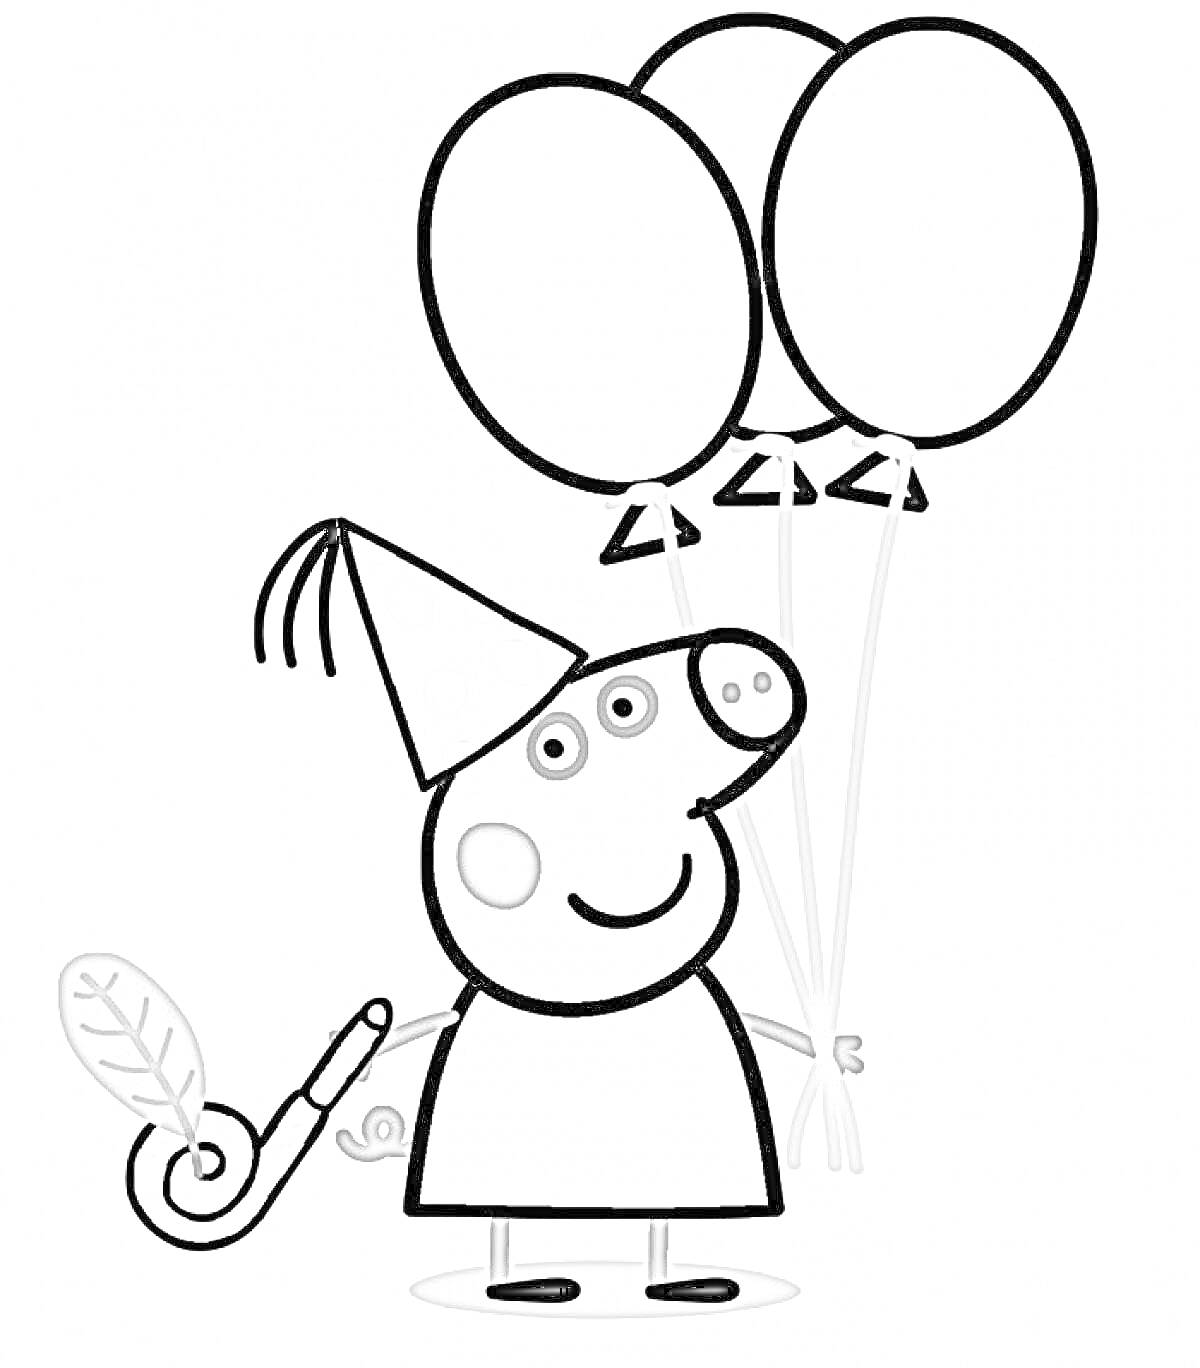 Раскраска Свинка Пеппа с тремя воздушными шарами и дудочкой в колпаке